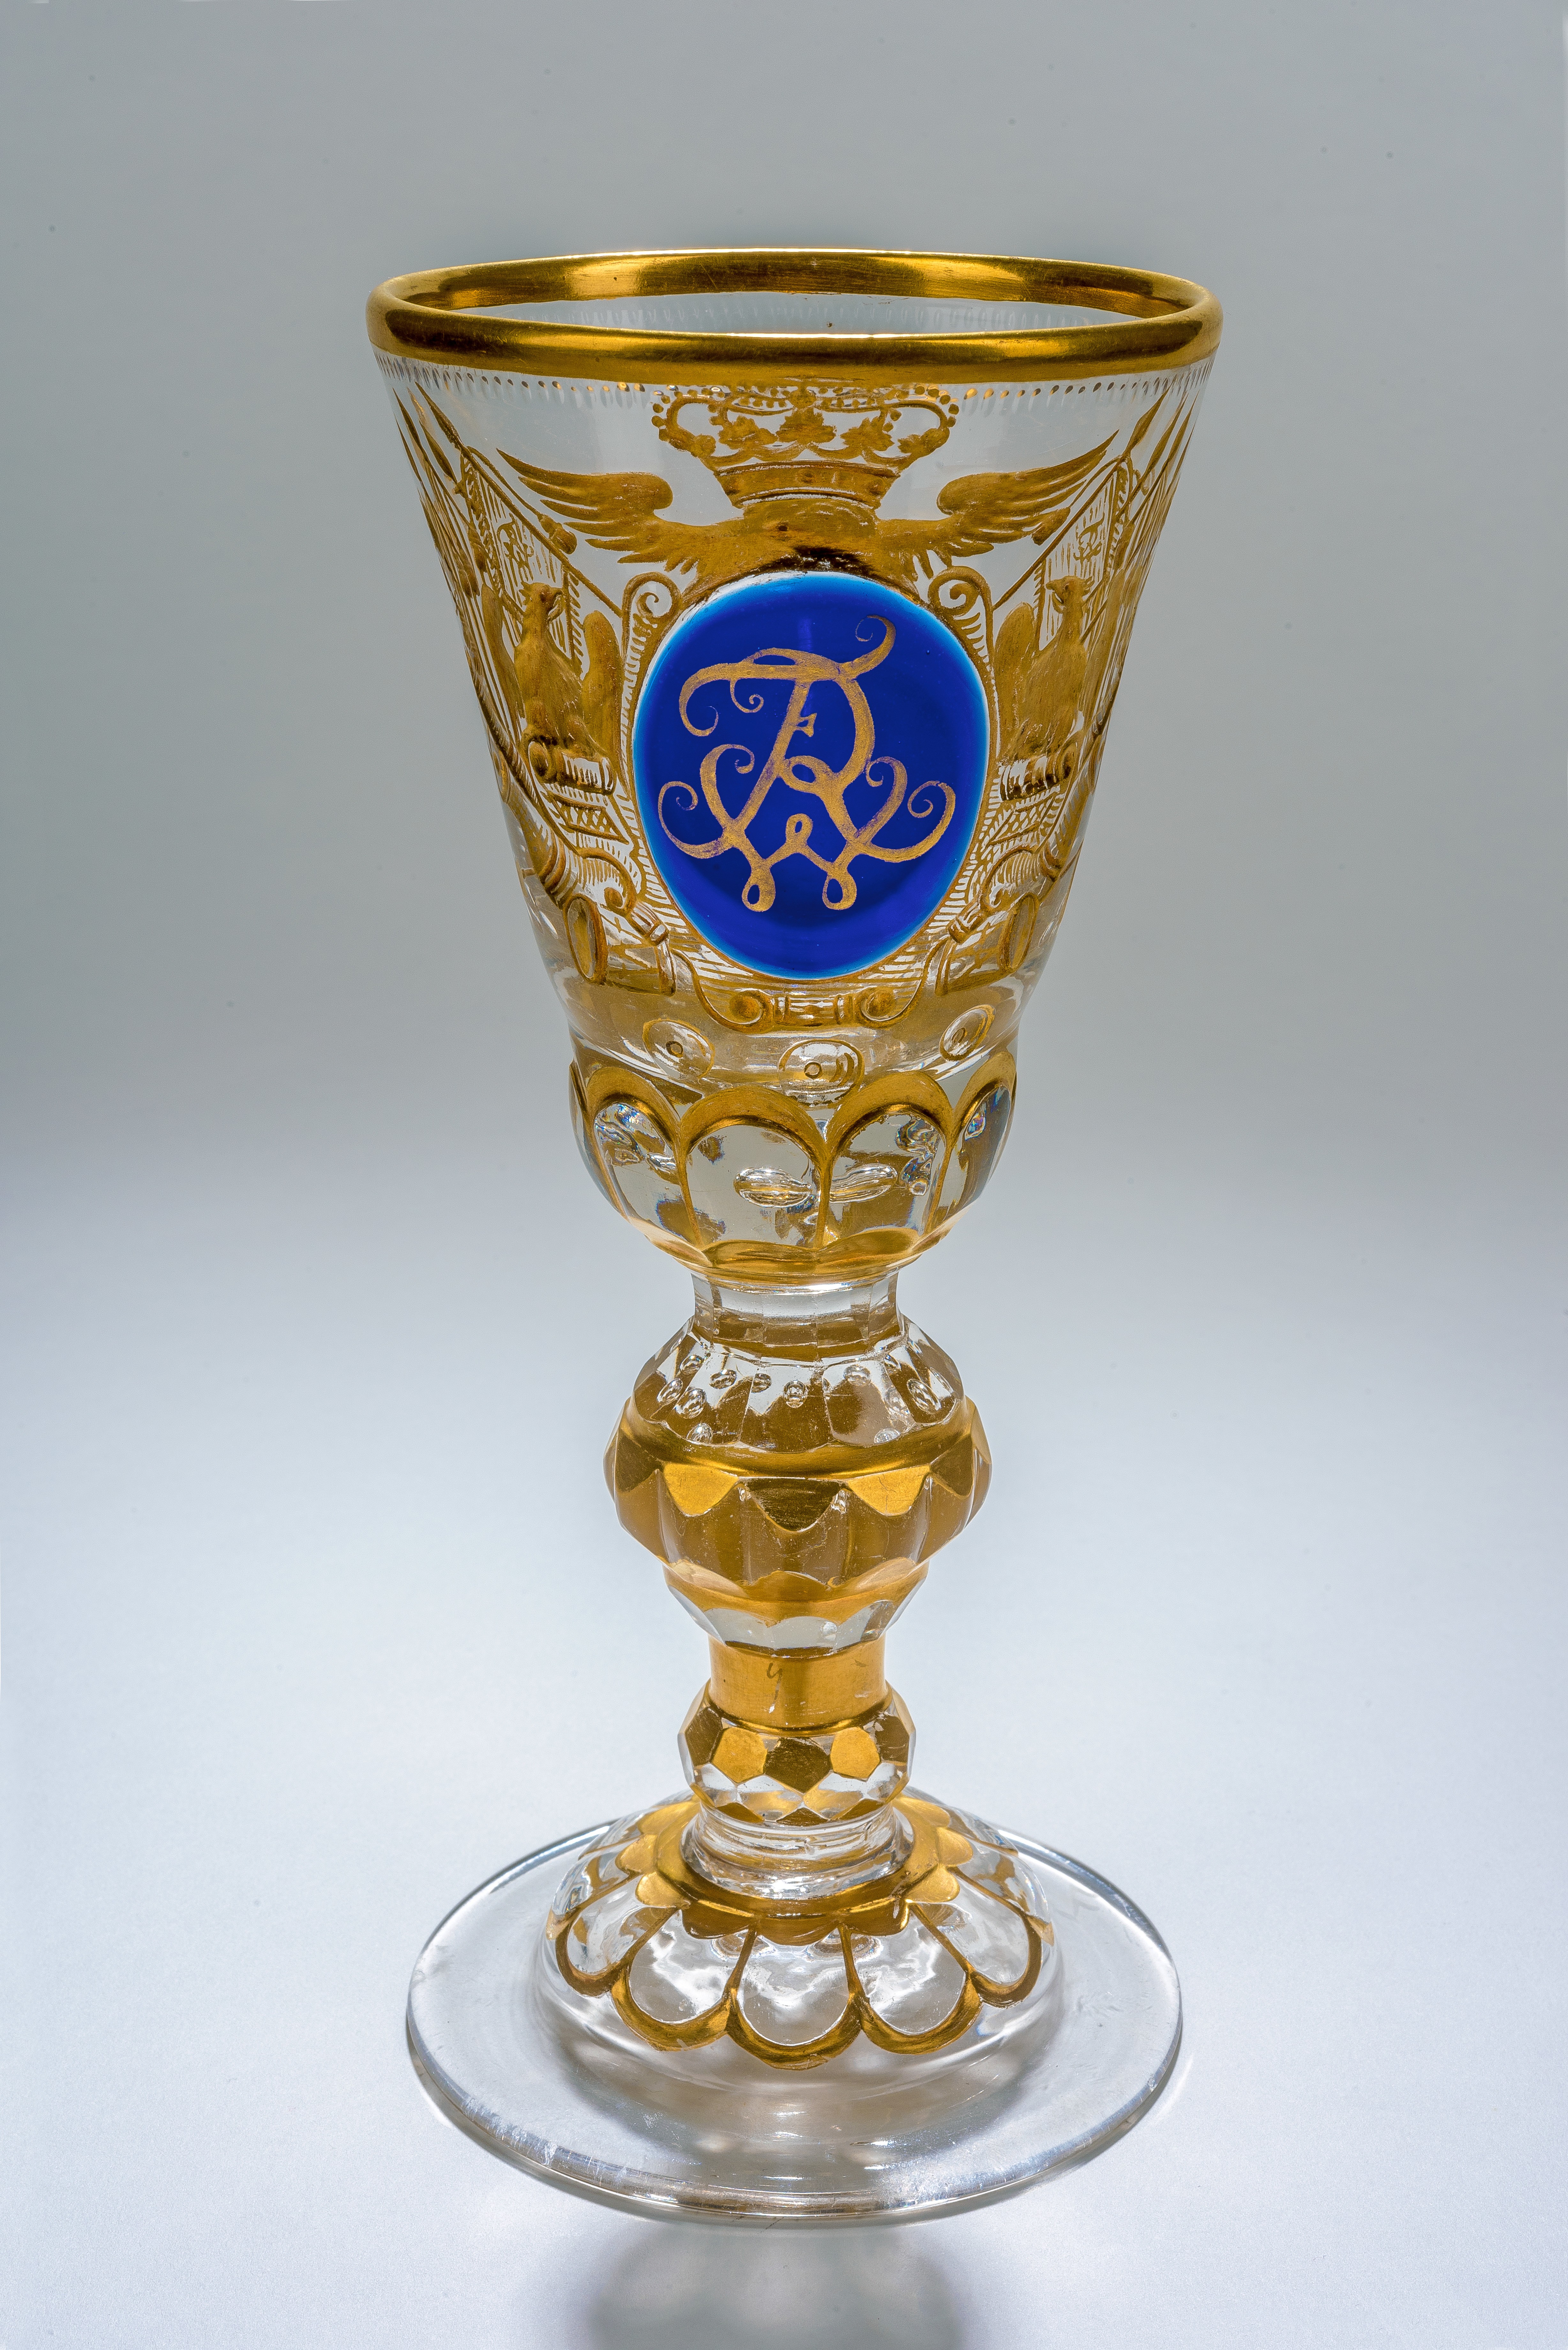 Pokal mit blauem Medaillon "FWR", XIII 1481. (Stiftung Preußische Schlösser und Gärten Berlin-Brandenburg CC BY-NC-SA)